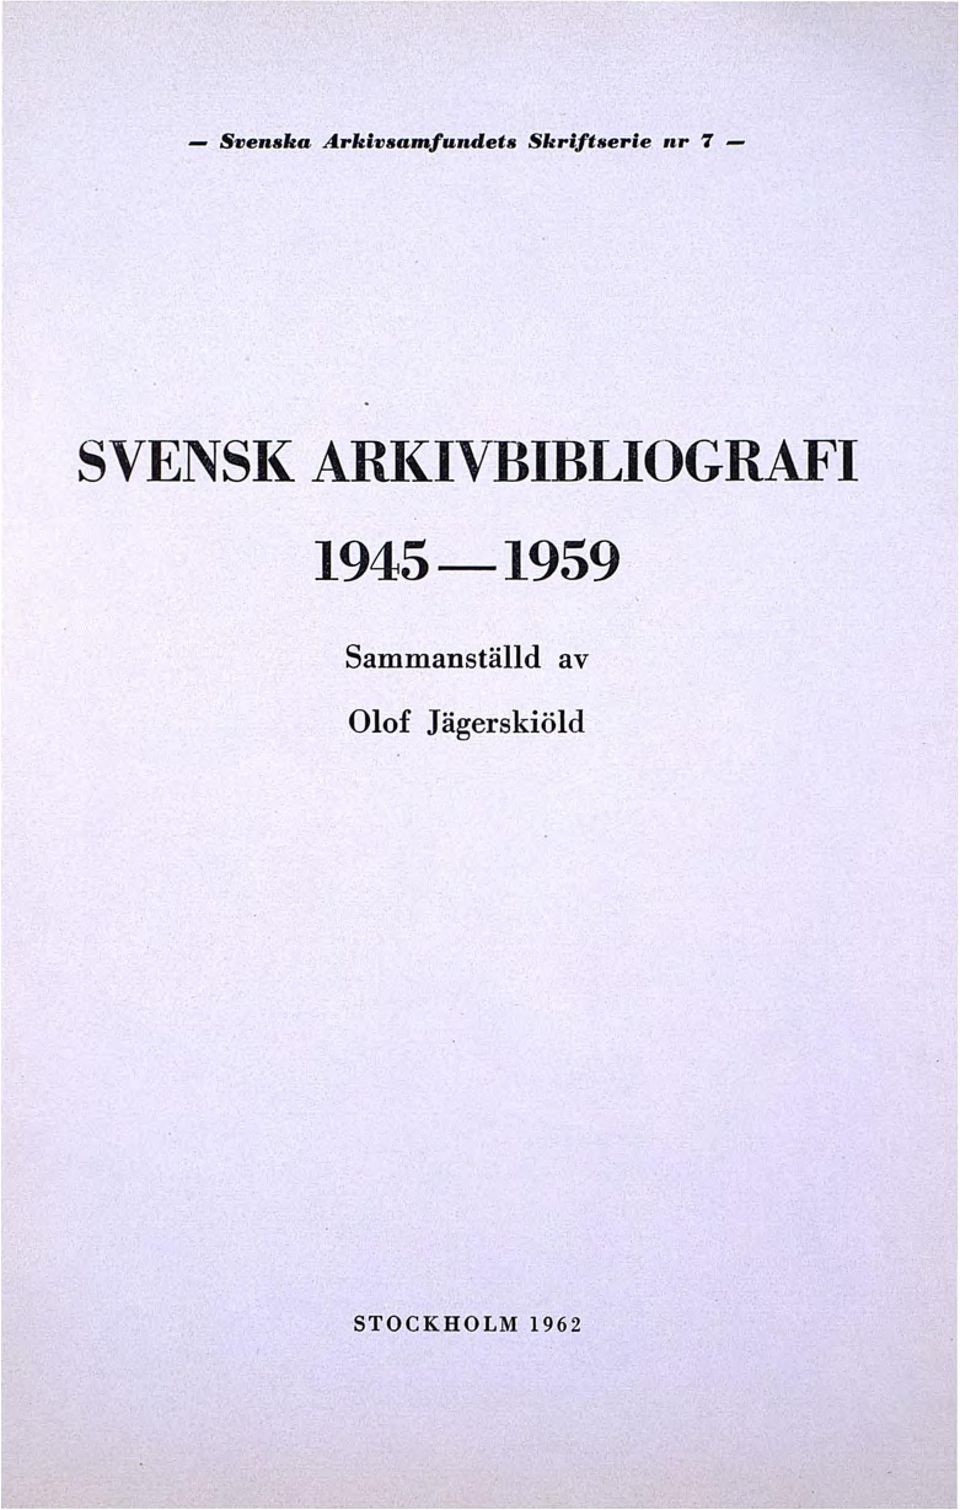 ARI(IVBIBLIOGRAFI 1945-1959